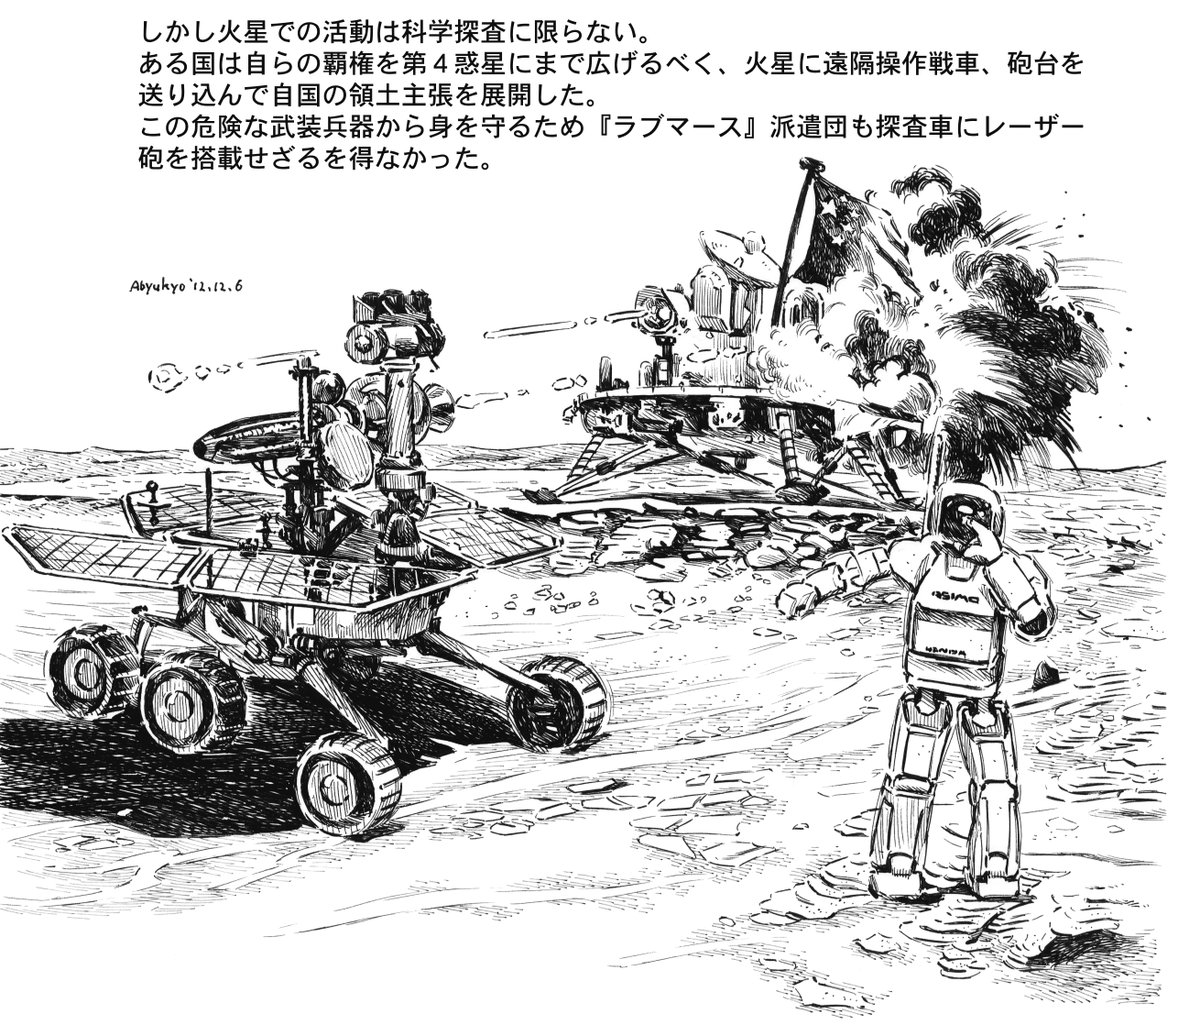 このままでは火星の権益は欧米と中国に握られてしまう。日本は他国と一線を画し、2足歩行ロボット「火星探査仕様ASIMO」とアバター機能を備えた美少女セクサロイド大量投入による「LOVE MARS」計画を一刻も早く発動し、火星に橋頭保を確保すべし。
https://t.co/tr9mRnVBIj 